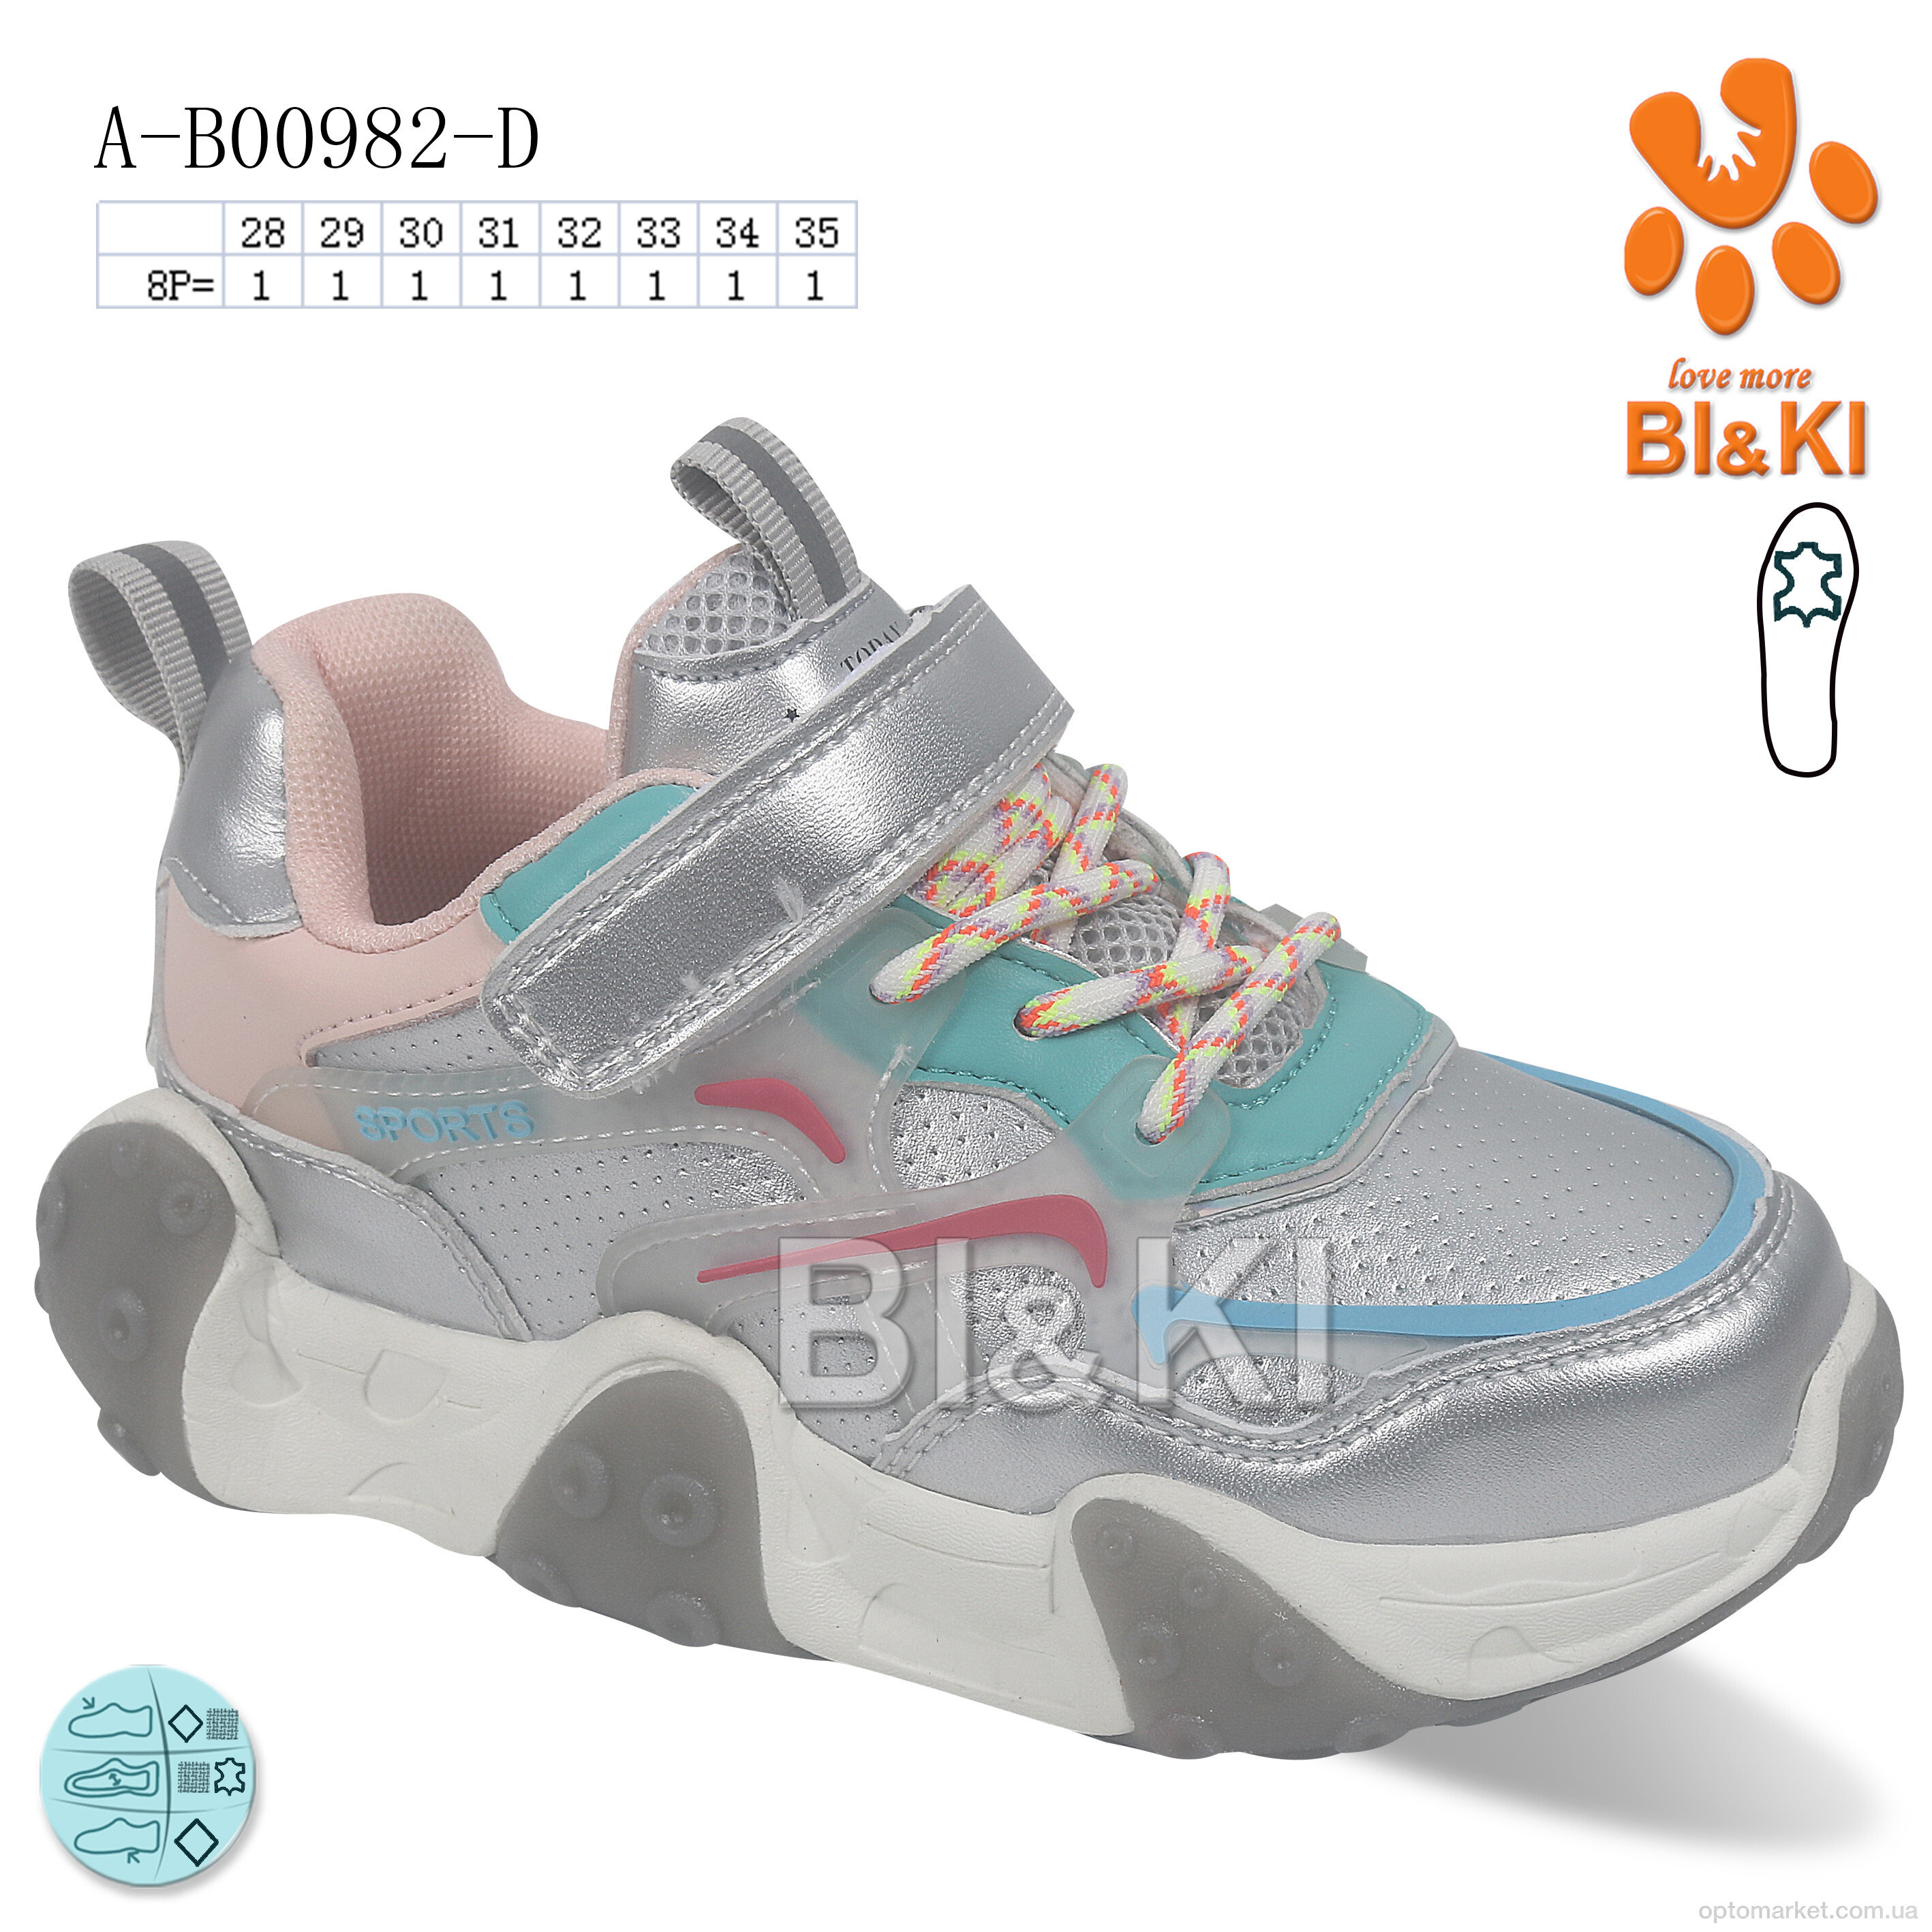 Купить Кросівки дитячі A-B00982-D Bi&Ki срібний, фото 1